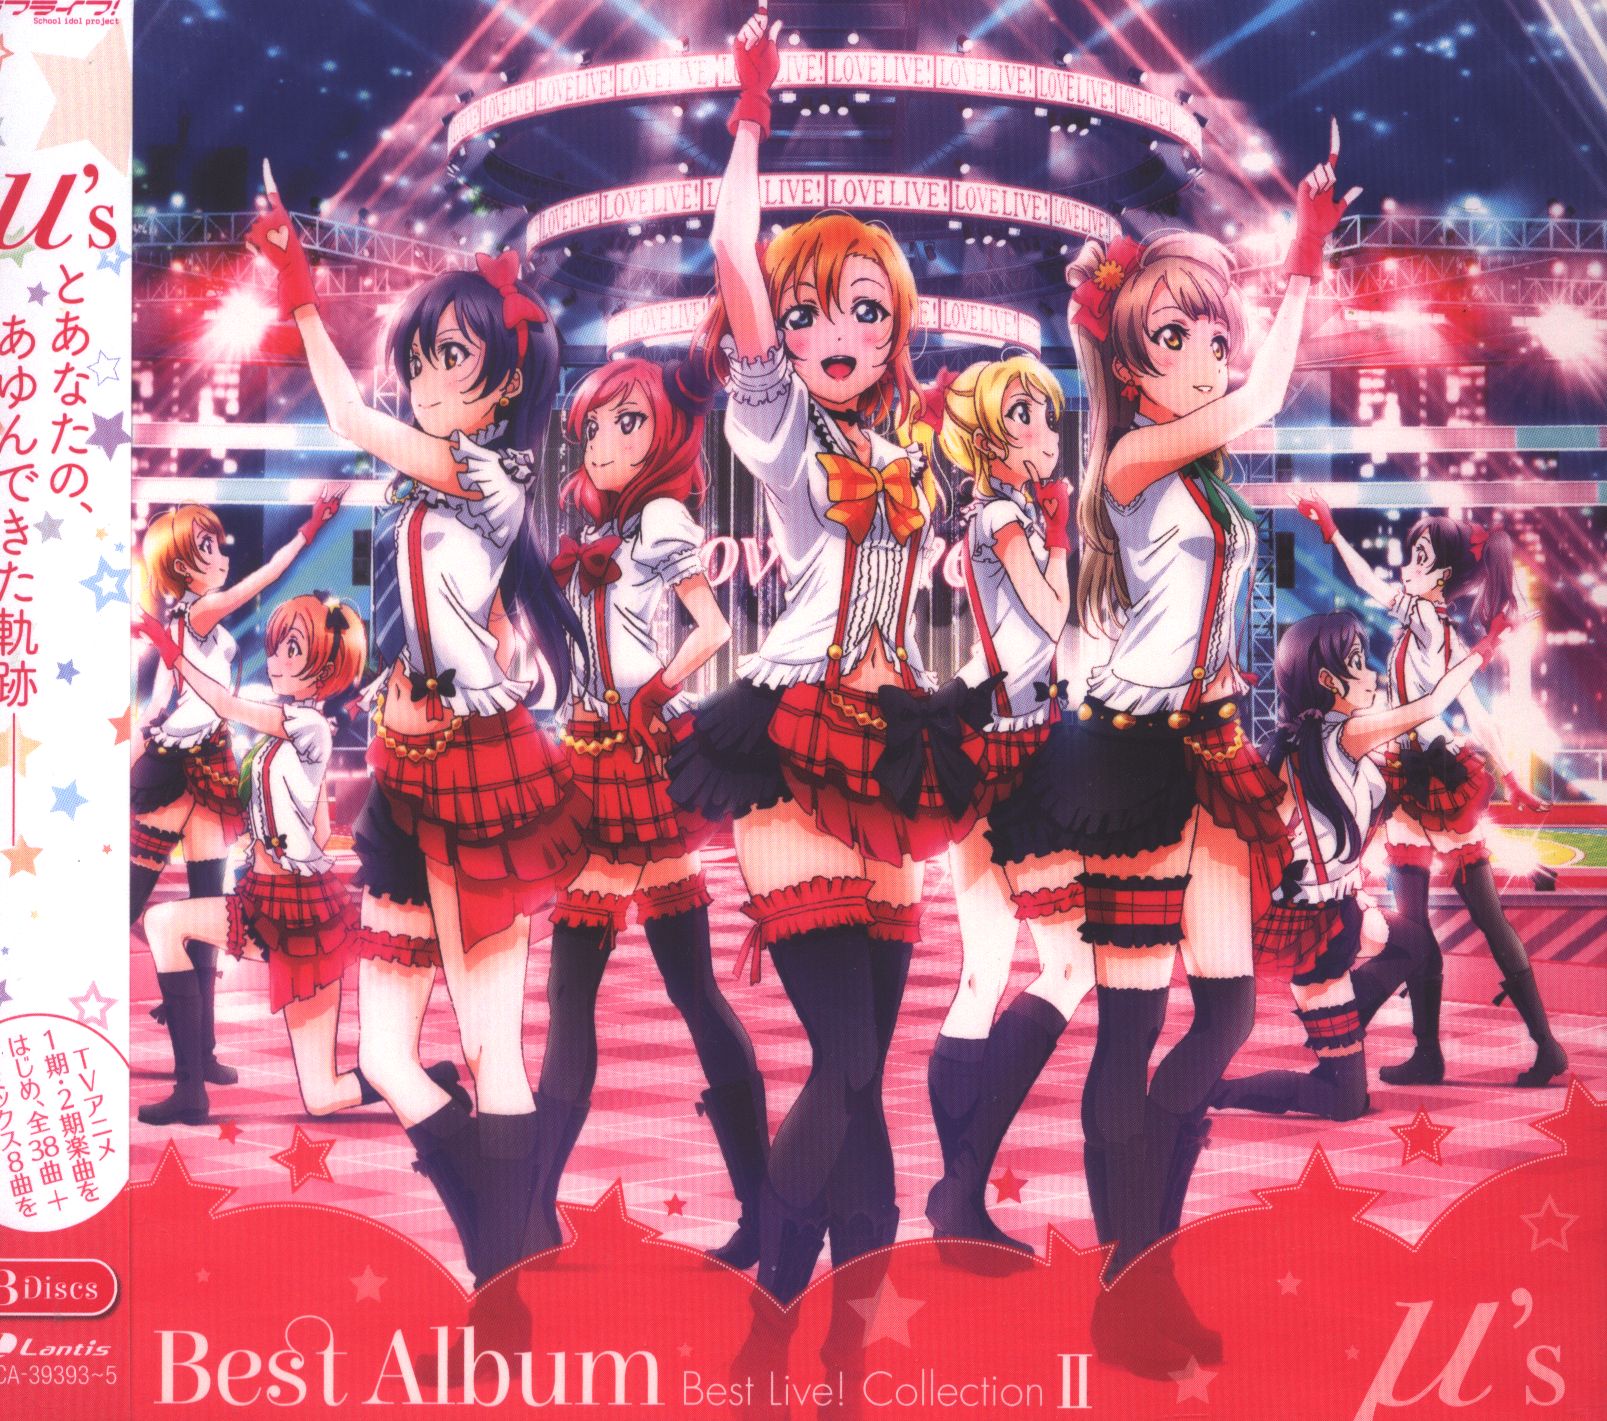 μ's ラブライブ! μ's Best Album Best Live! Collection II